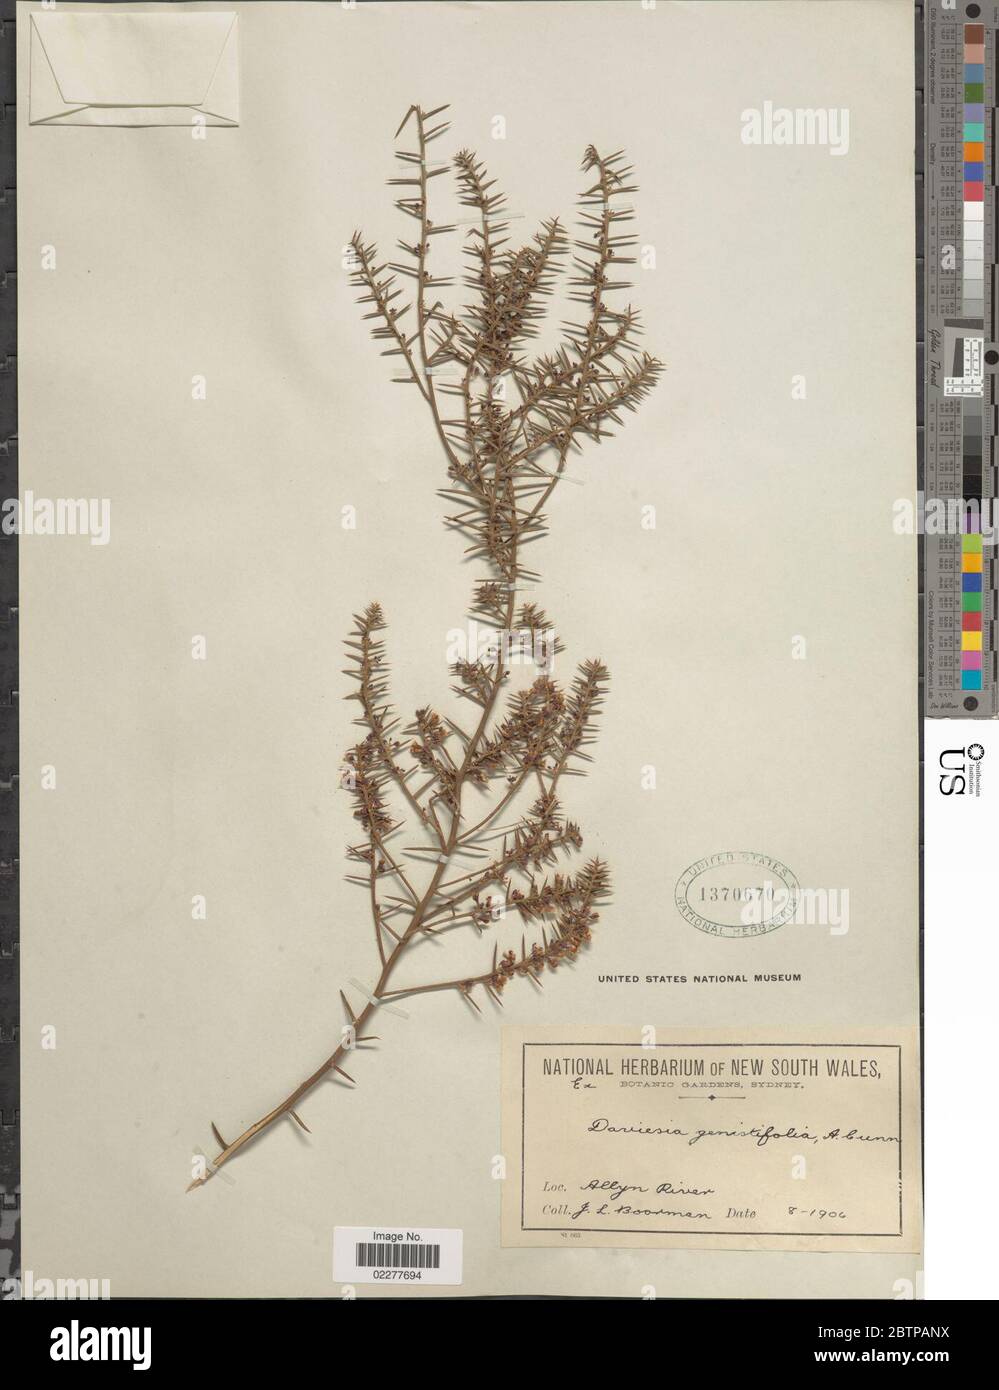 Daviesia genistifolia A Cunn ex Benth. Stock Photo